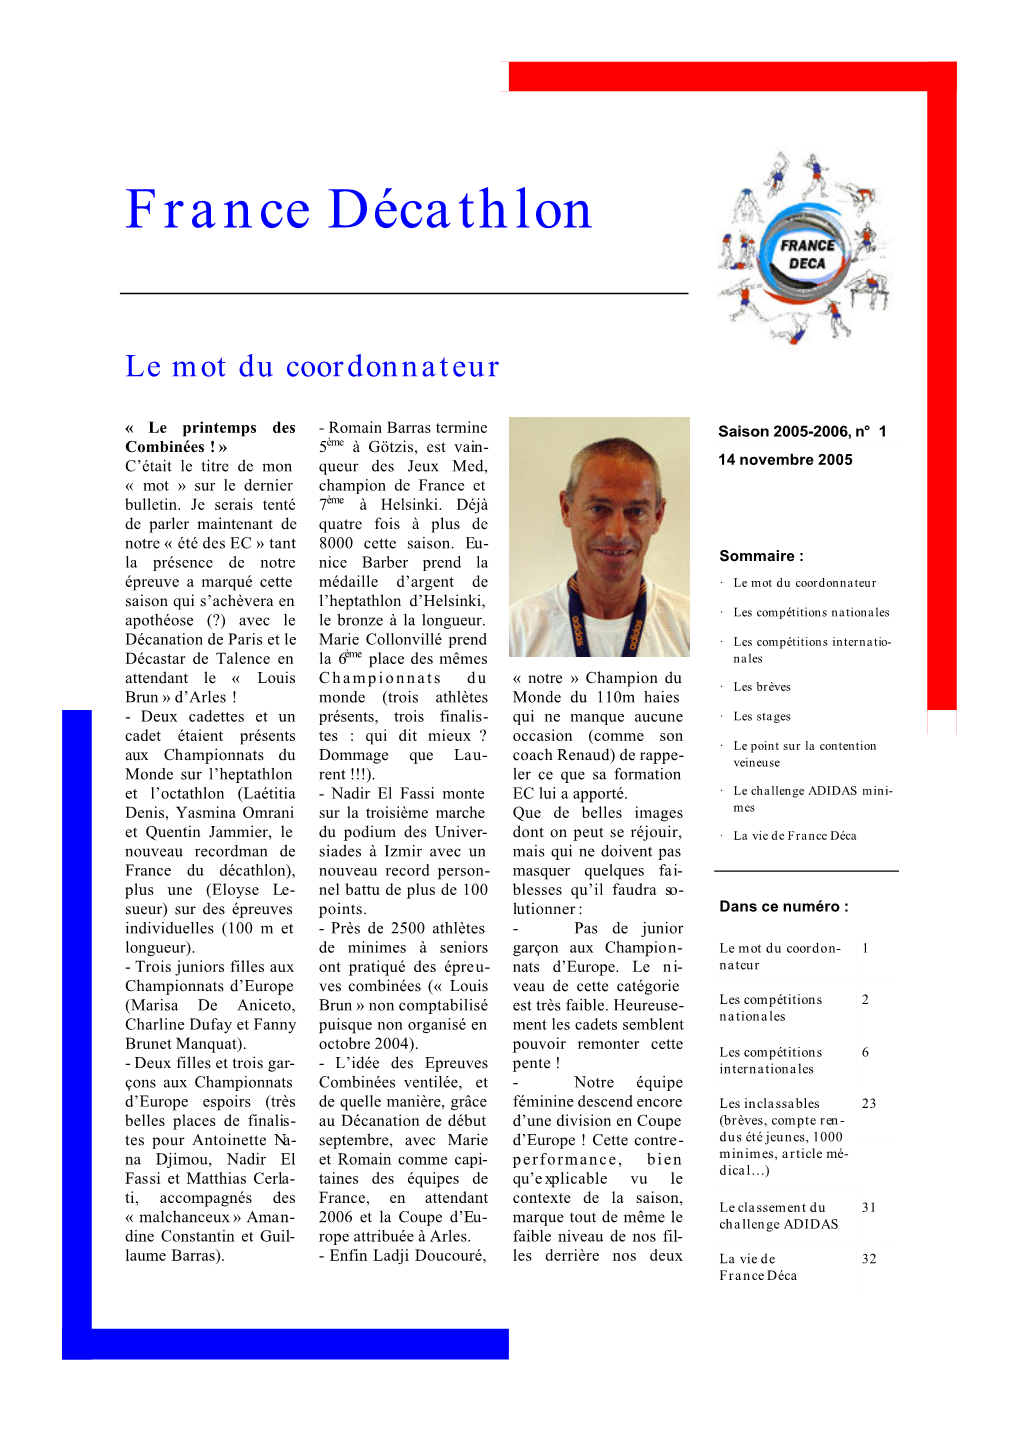 France Déca N°3 Novembre 2005